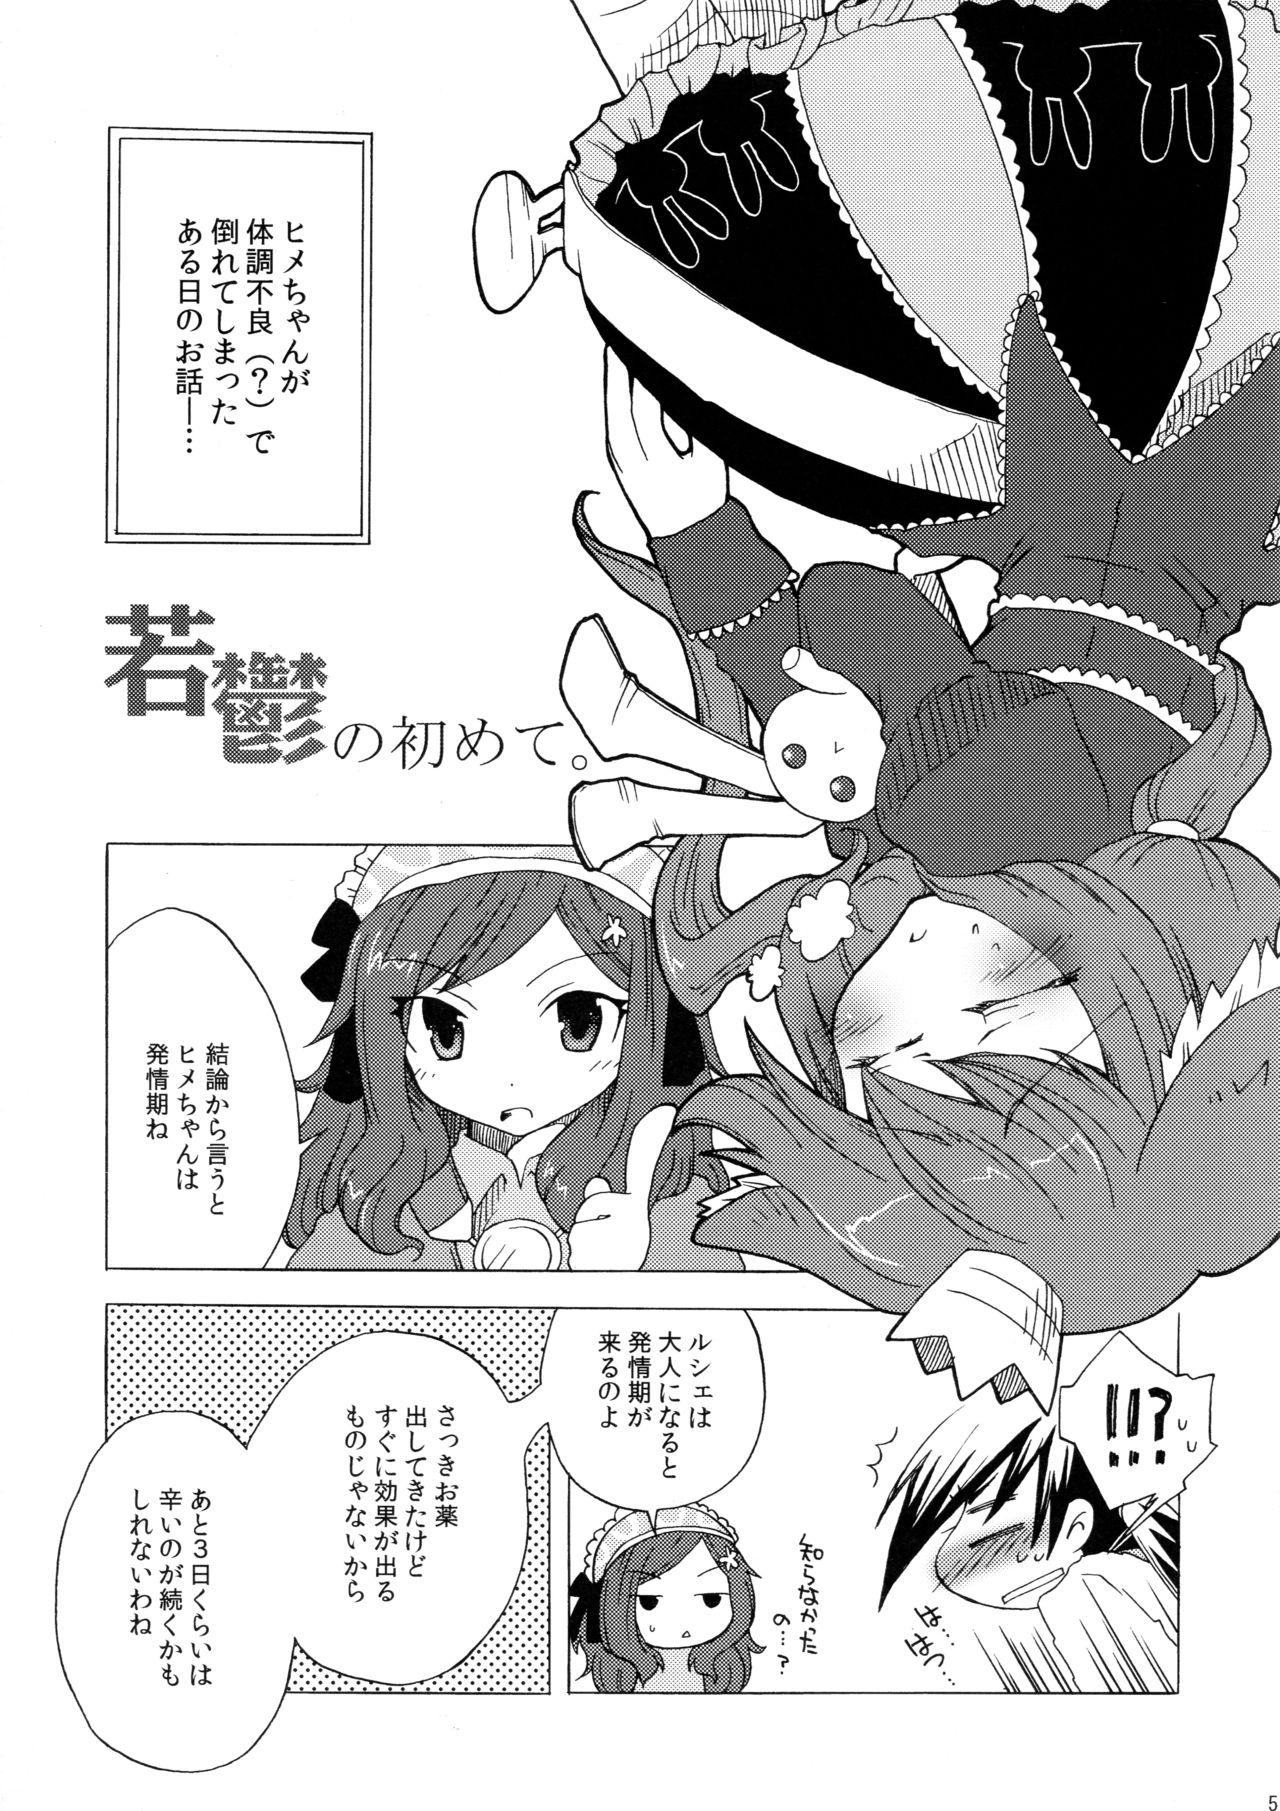 Street Waka Utsu no Hajimete. - 7th dragon Tributo - Page 5